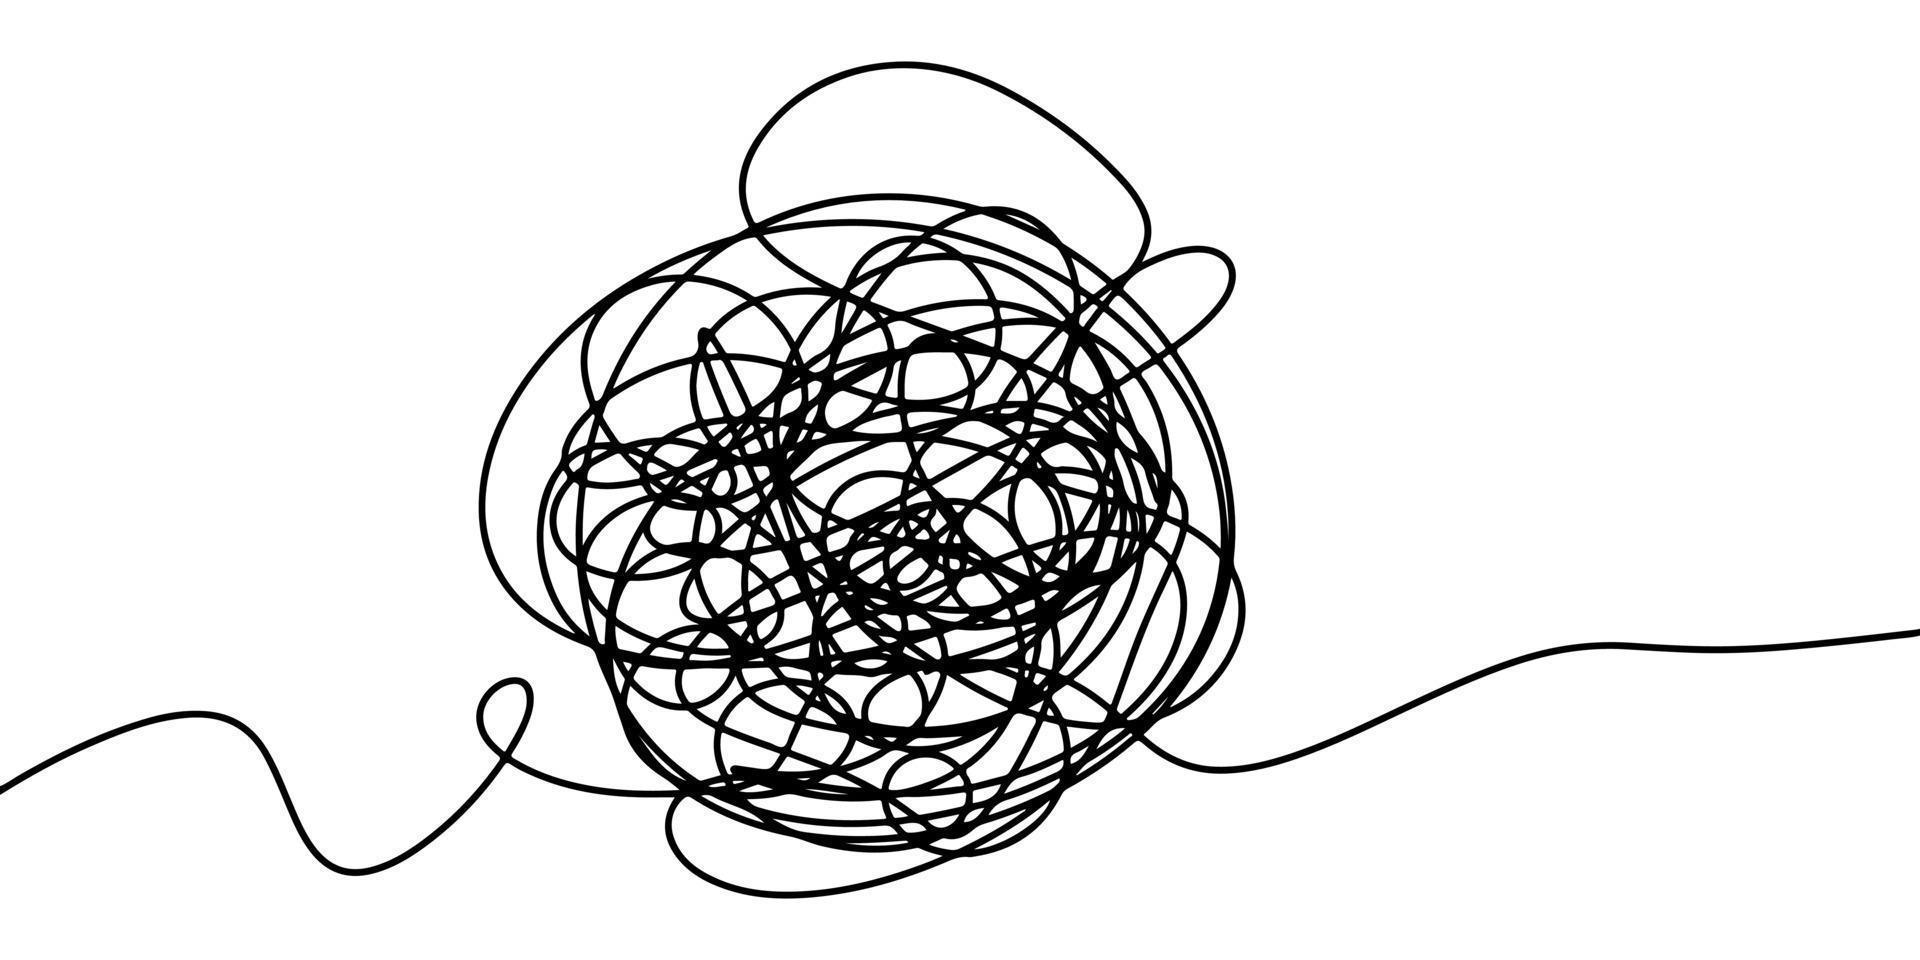 mão desenhada de esboço de rabisco emaranhado. Rabisco abstrato, padrão de doodle caos isolado no fundo branco. ilustração vetorial vetor